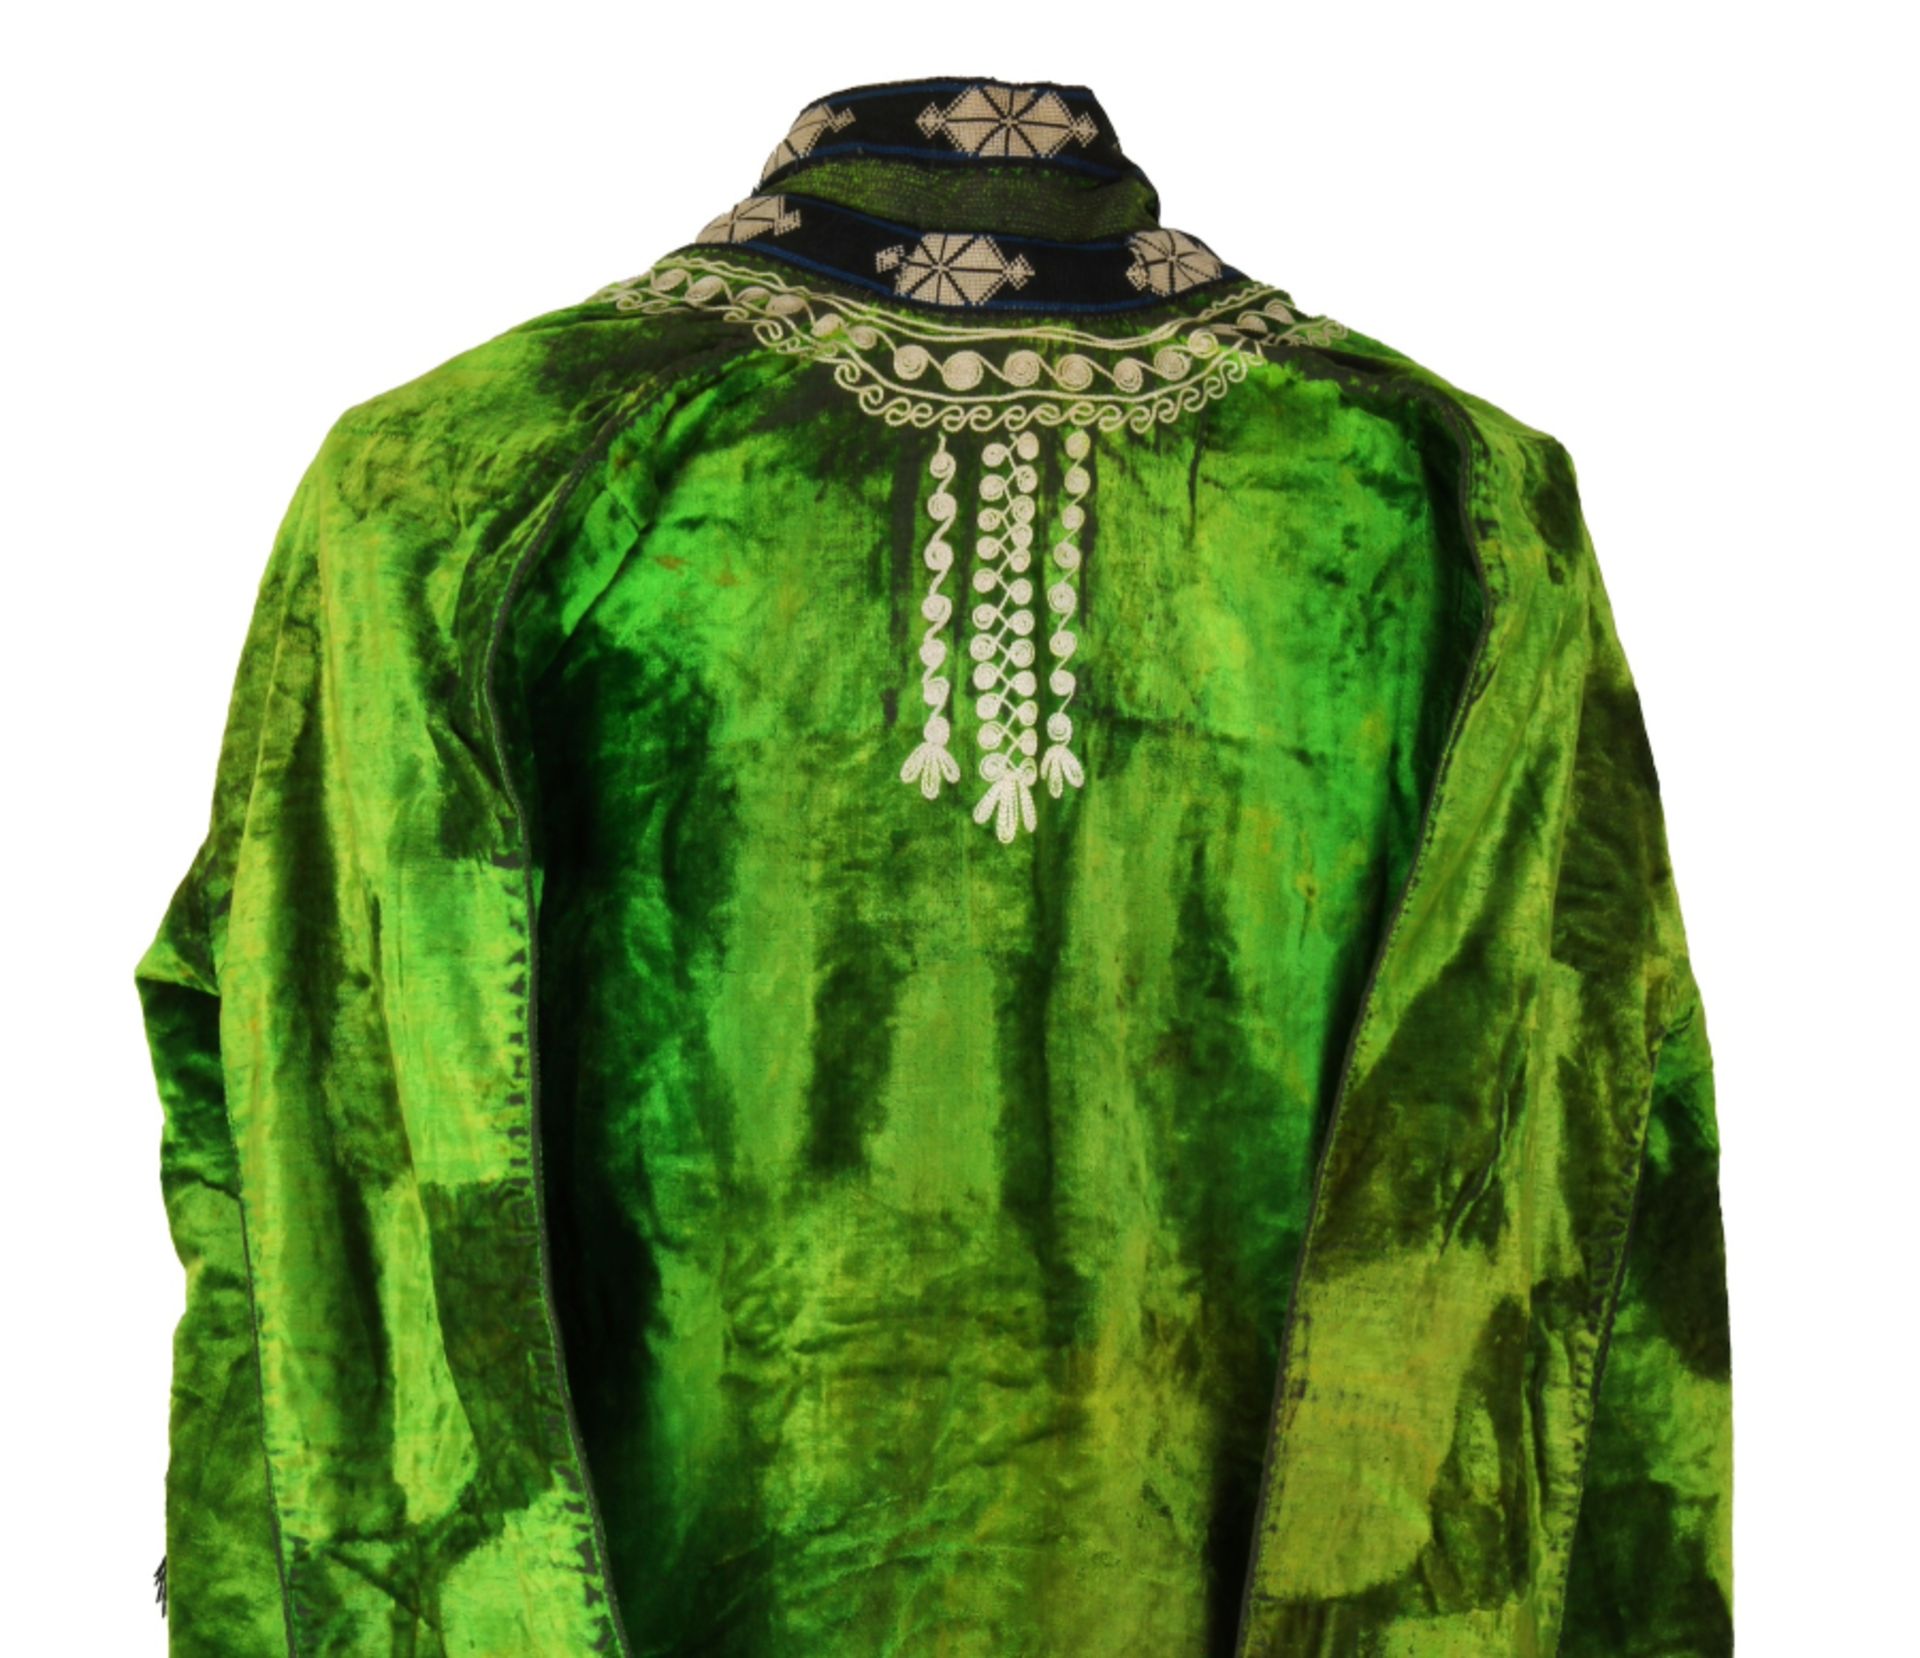 Wonderfully colourful Uzbek coat - Image 9 of 11